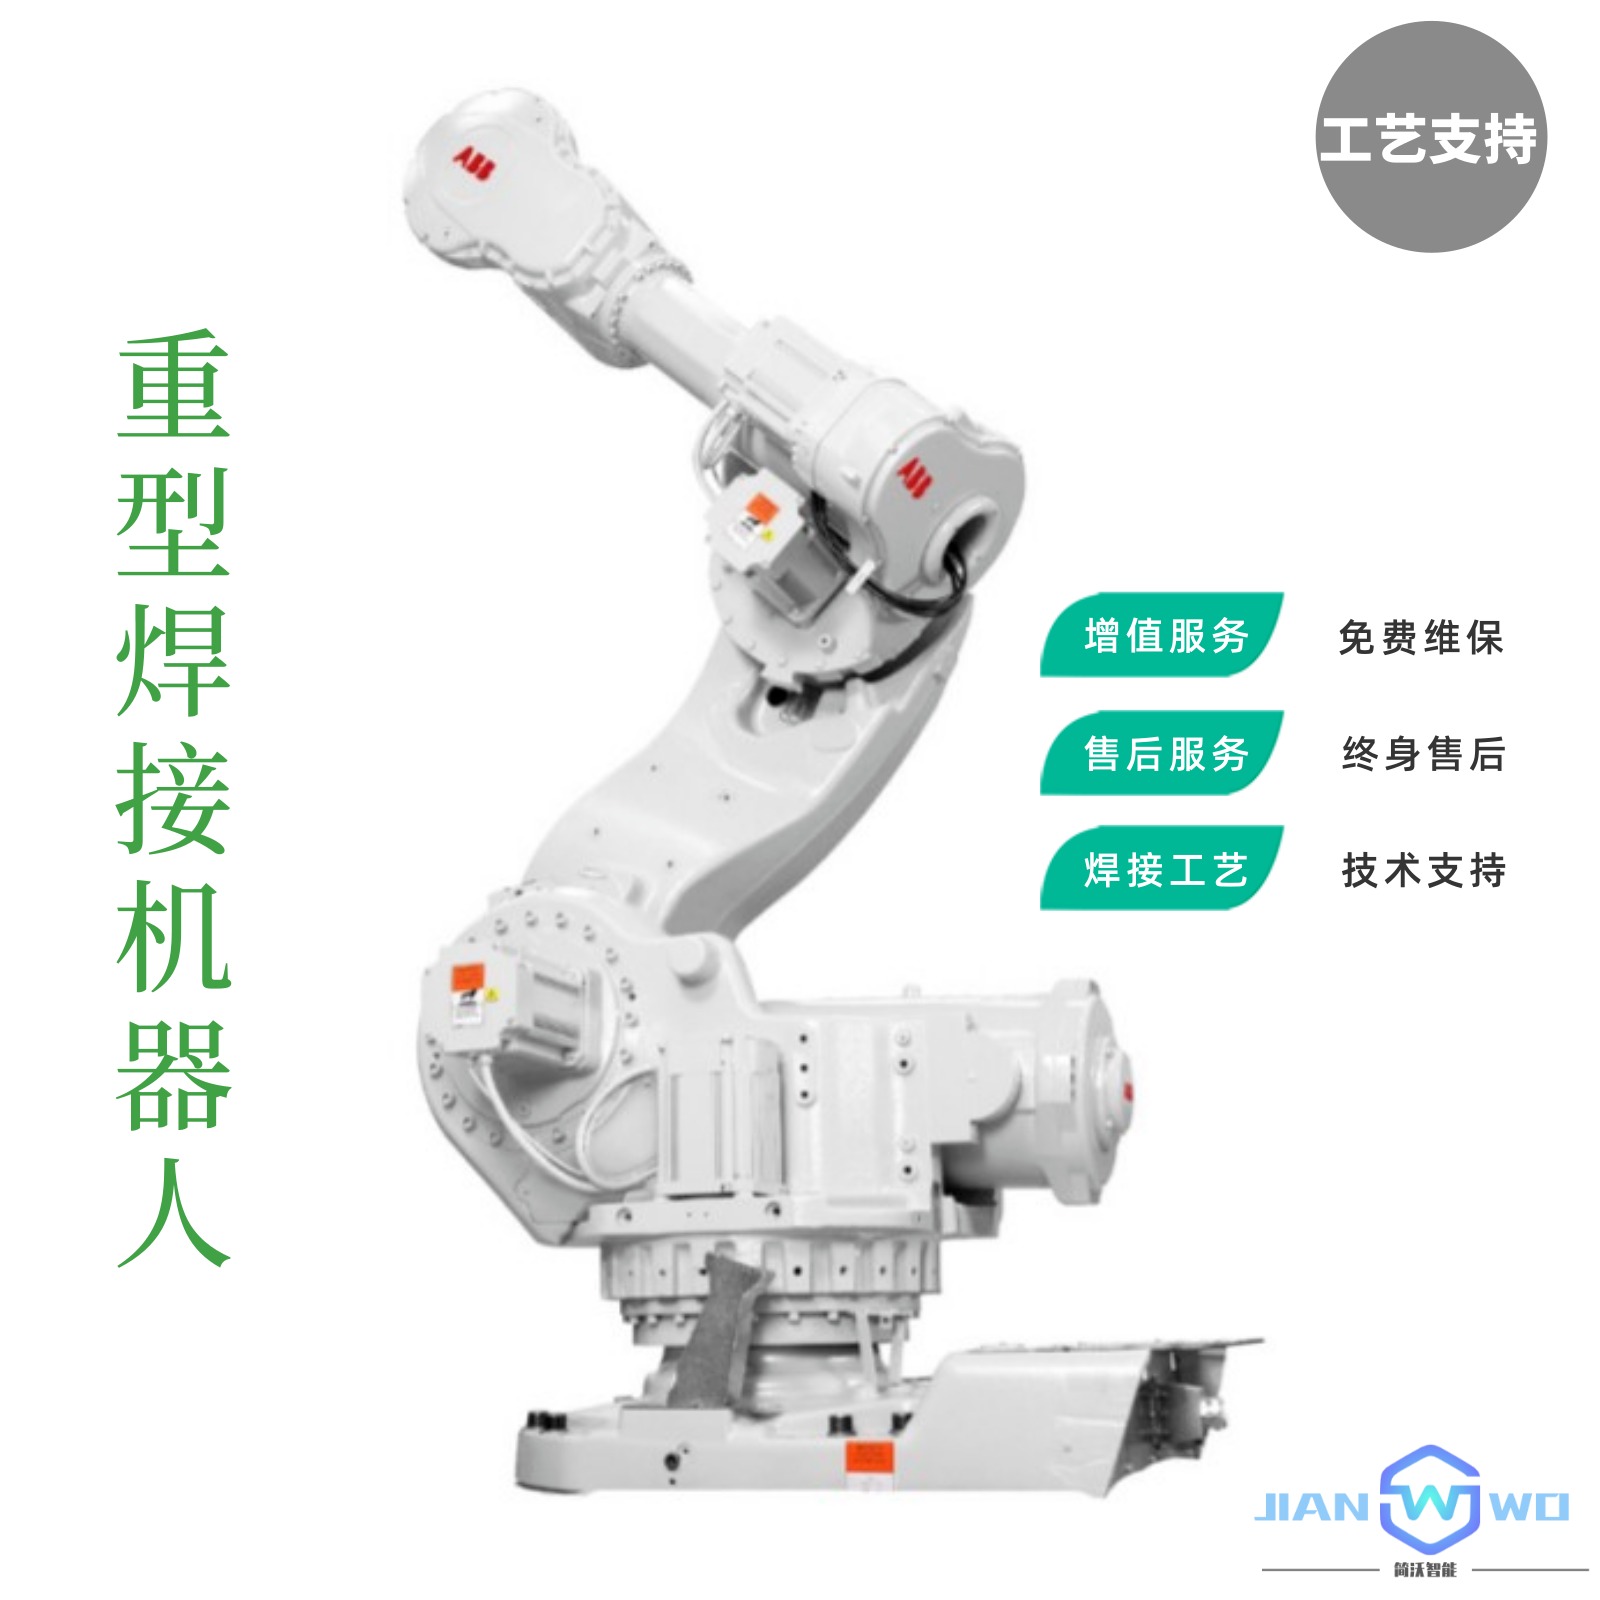 自动焊接机器人 焊接效率高工件品质好